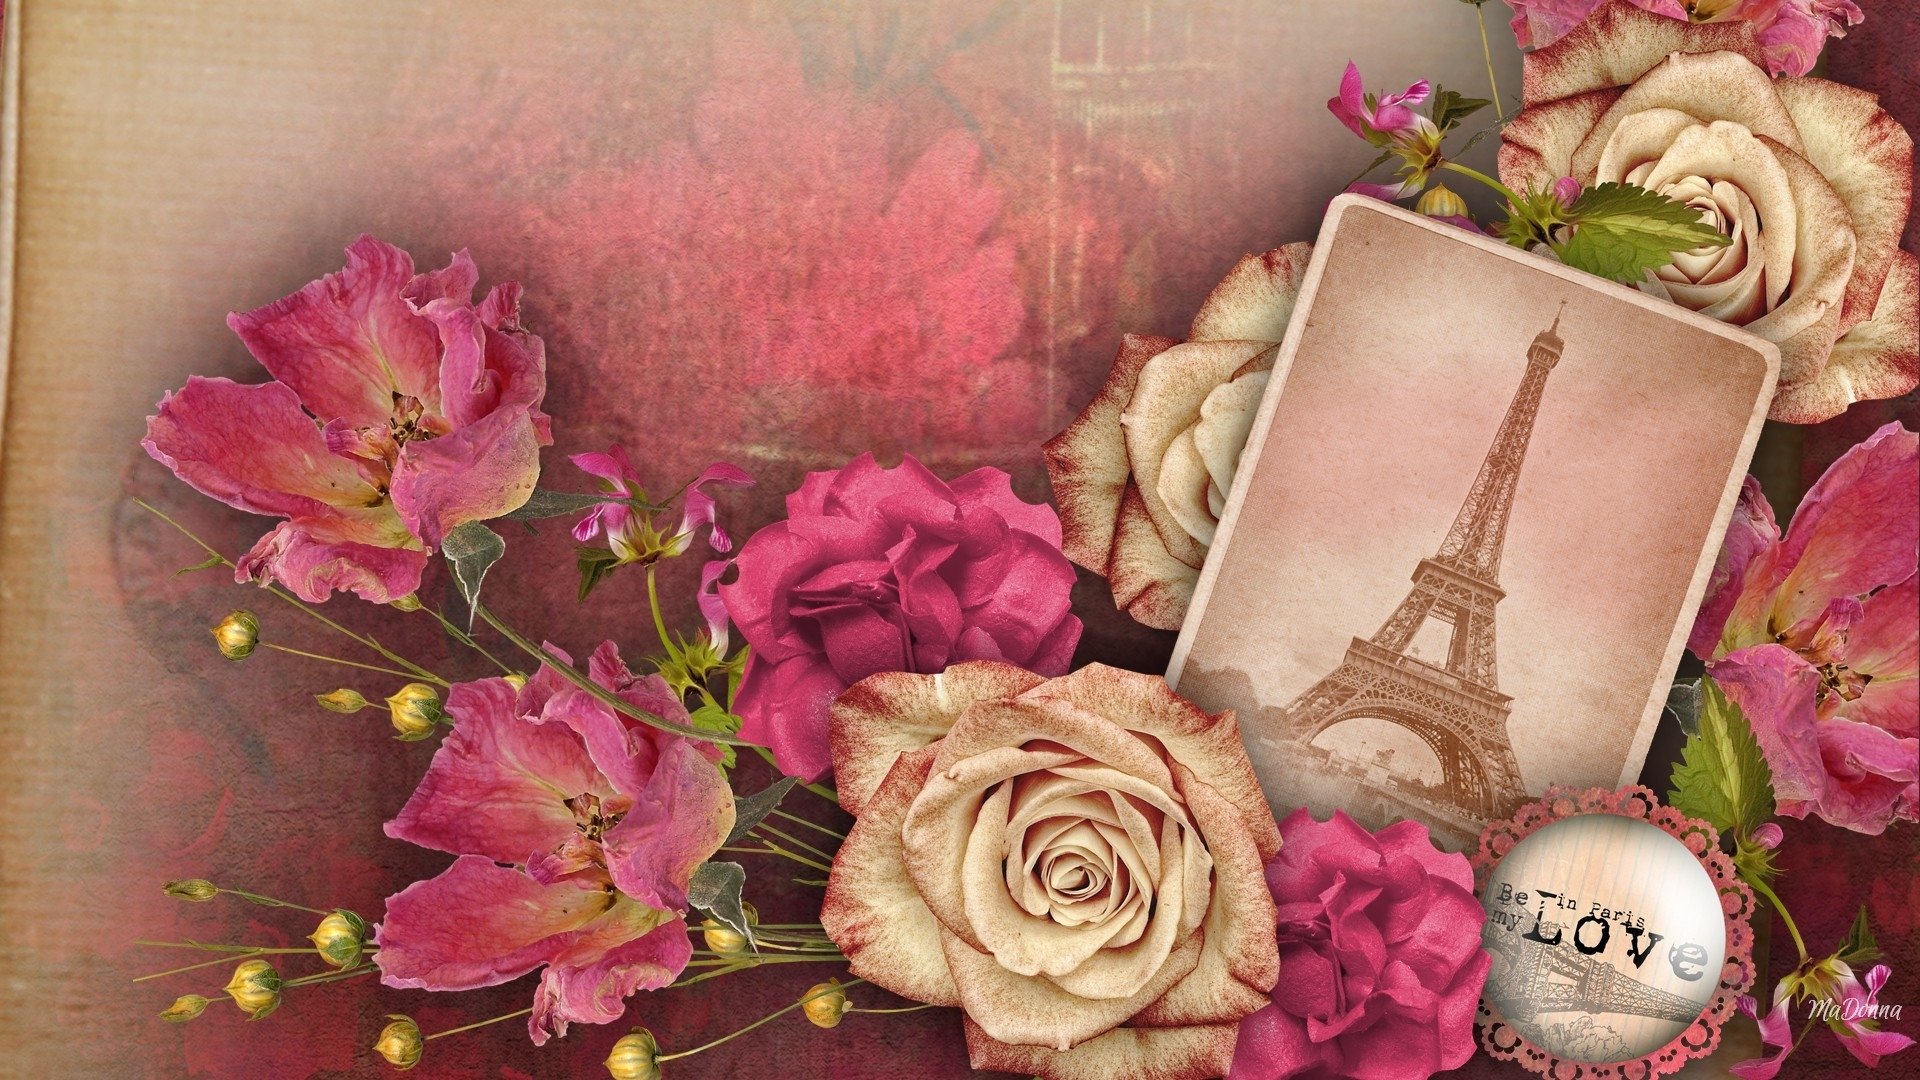 Memories of Paris